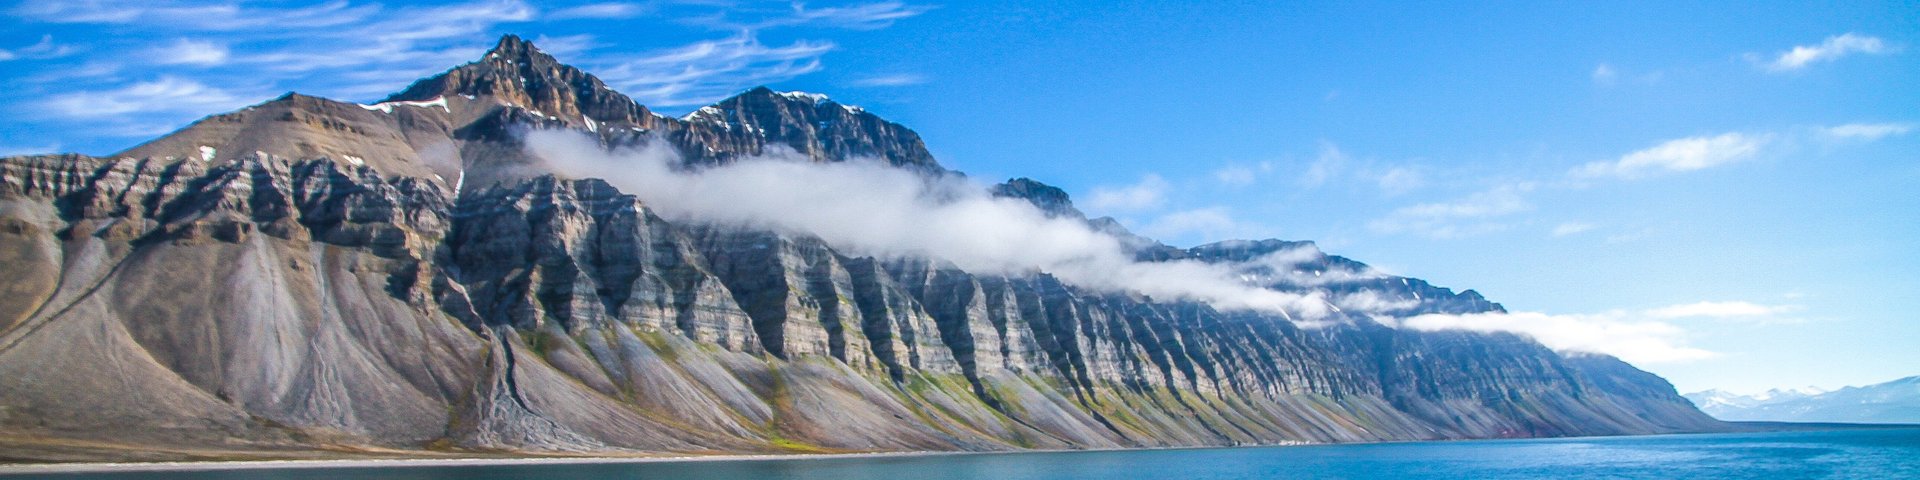 Bergkette in Spitzbergen